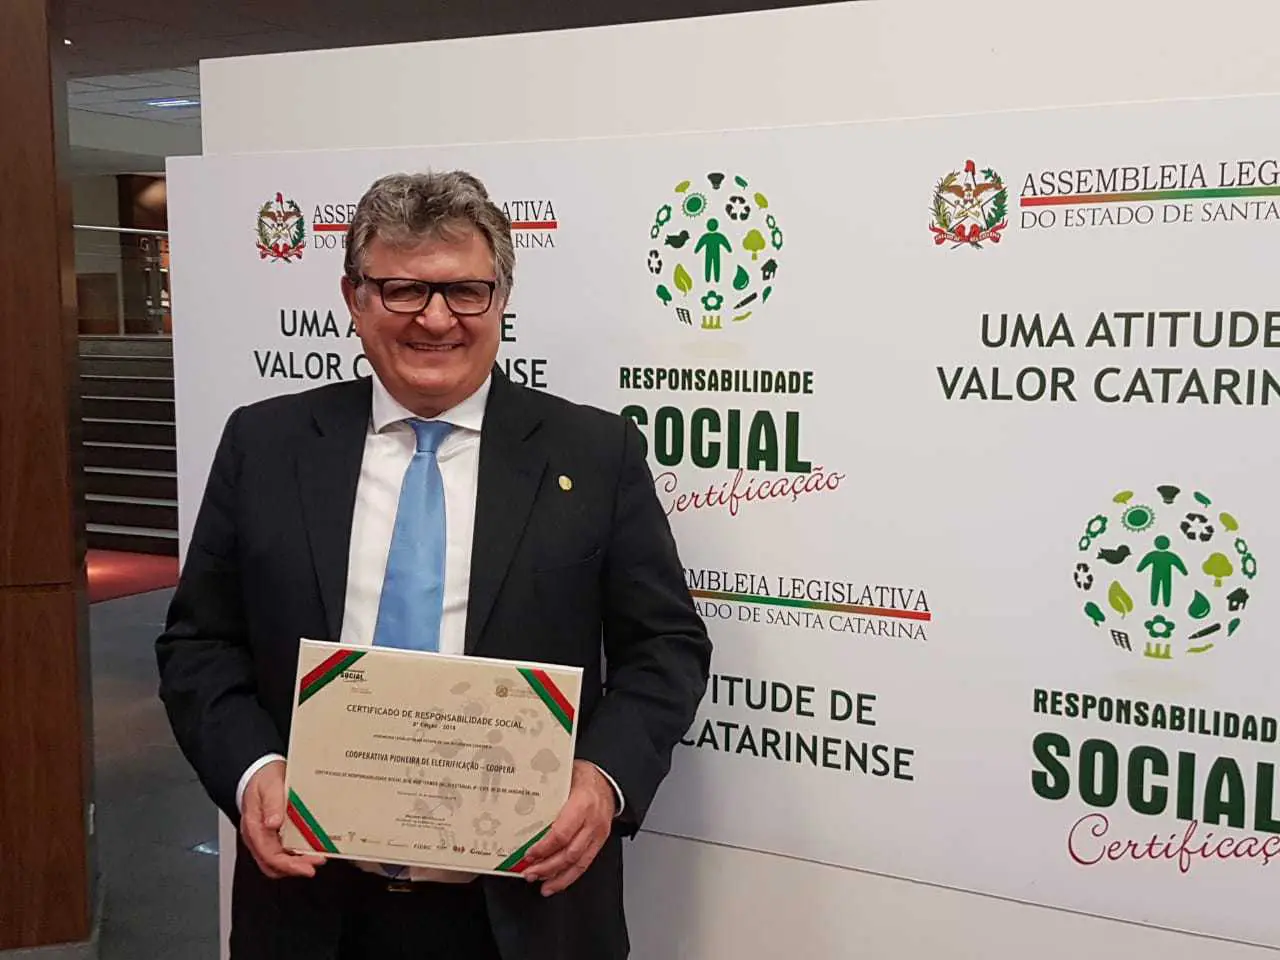 Coopera recebe Prêmio de Responsabilidade Social da Assembleia Legislativa